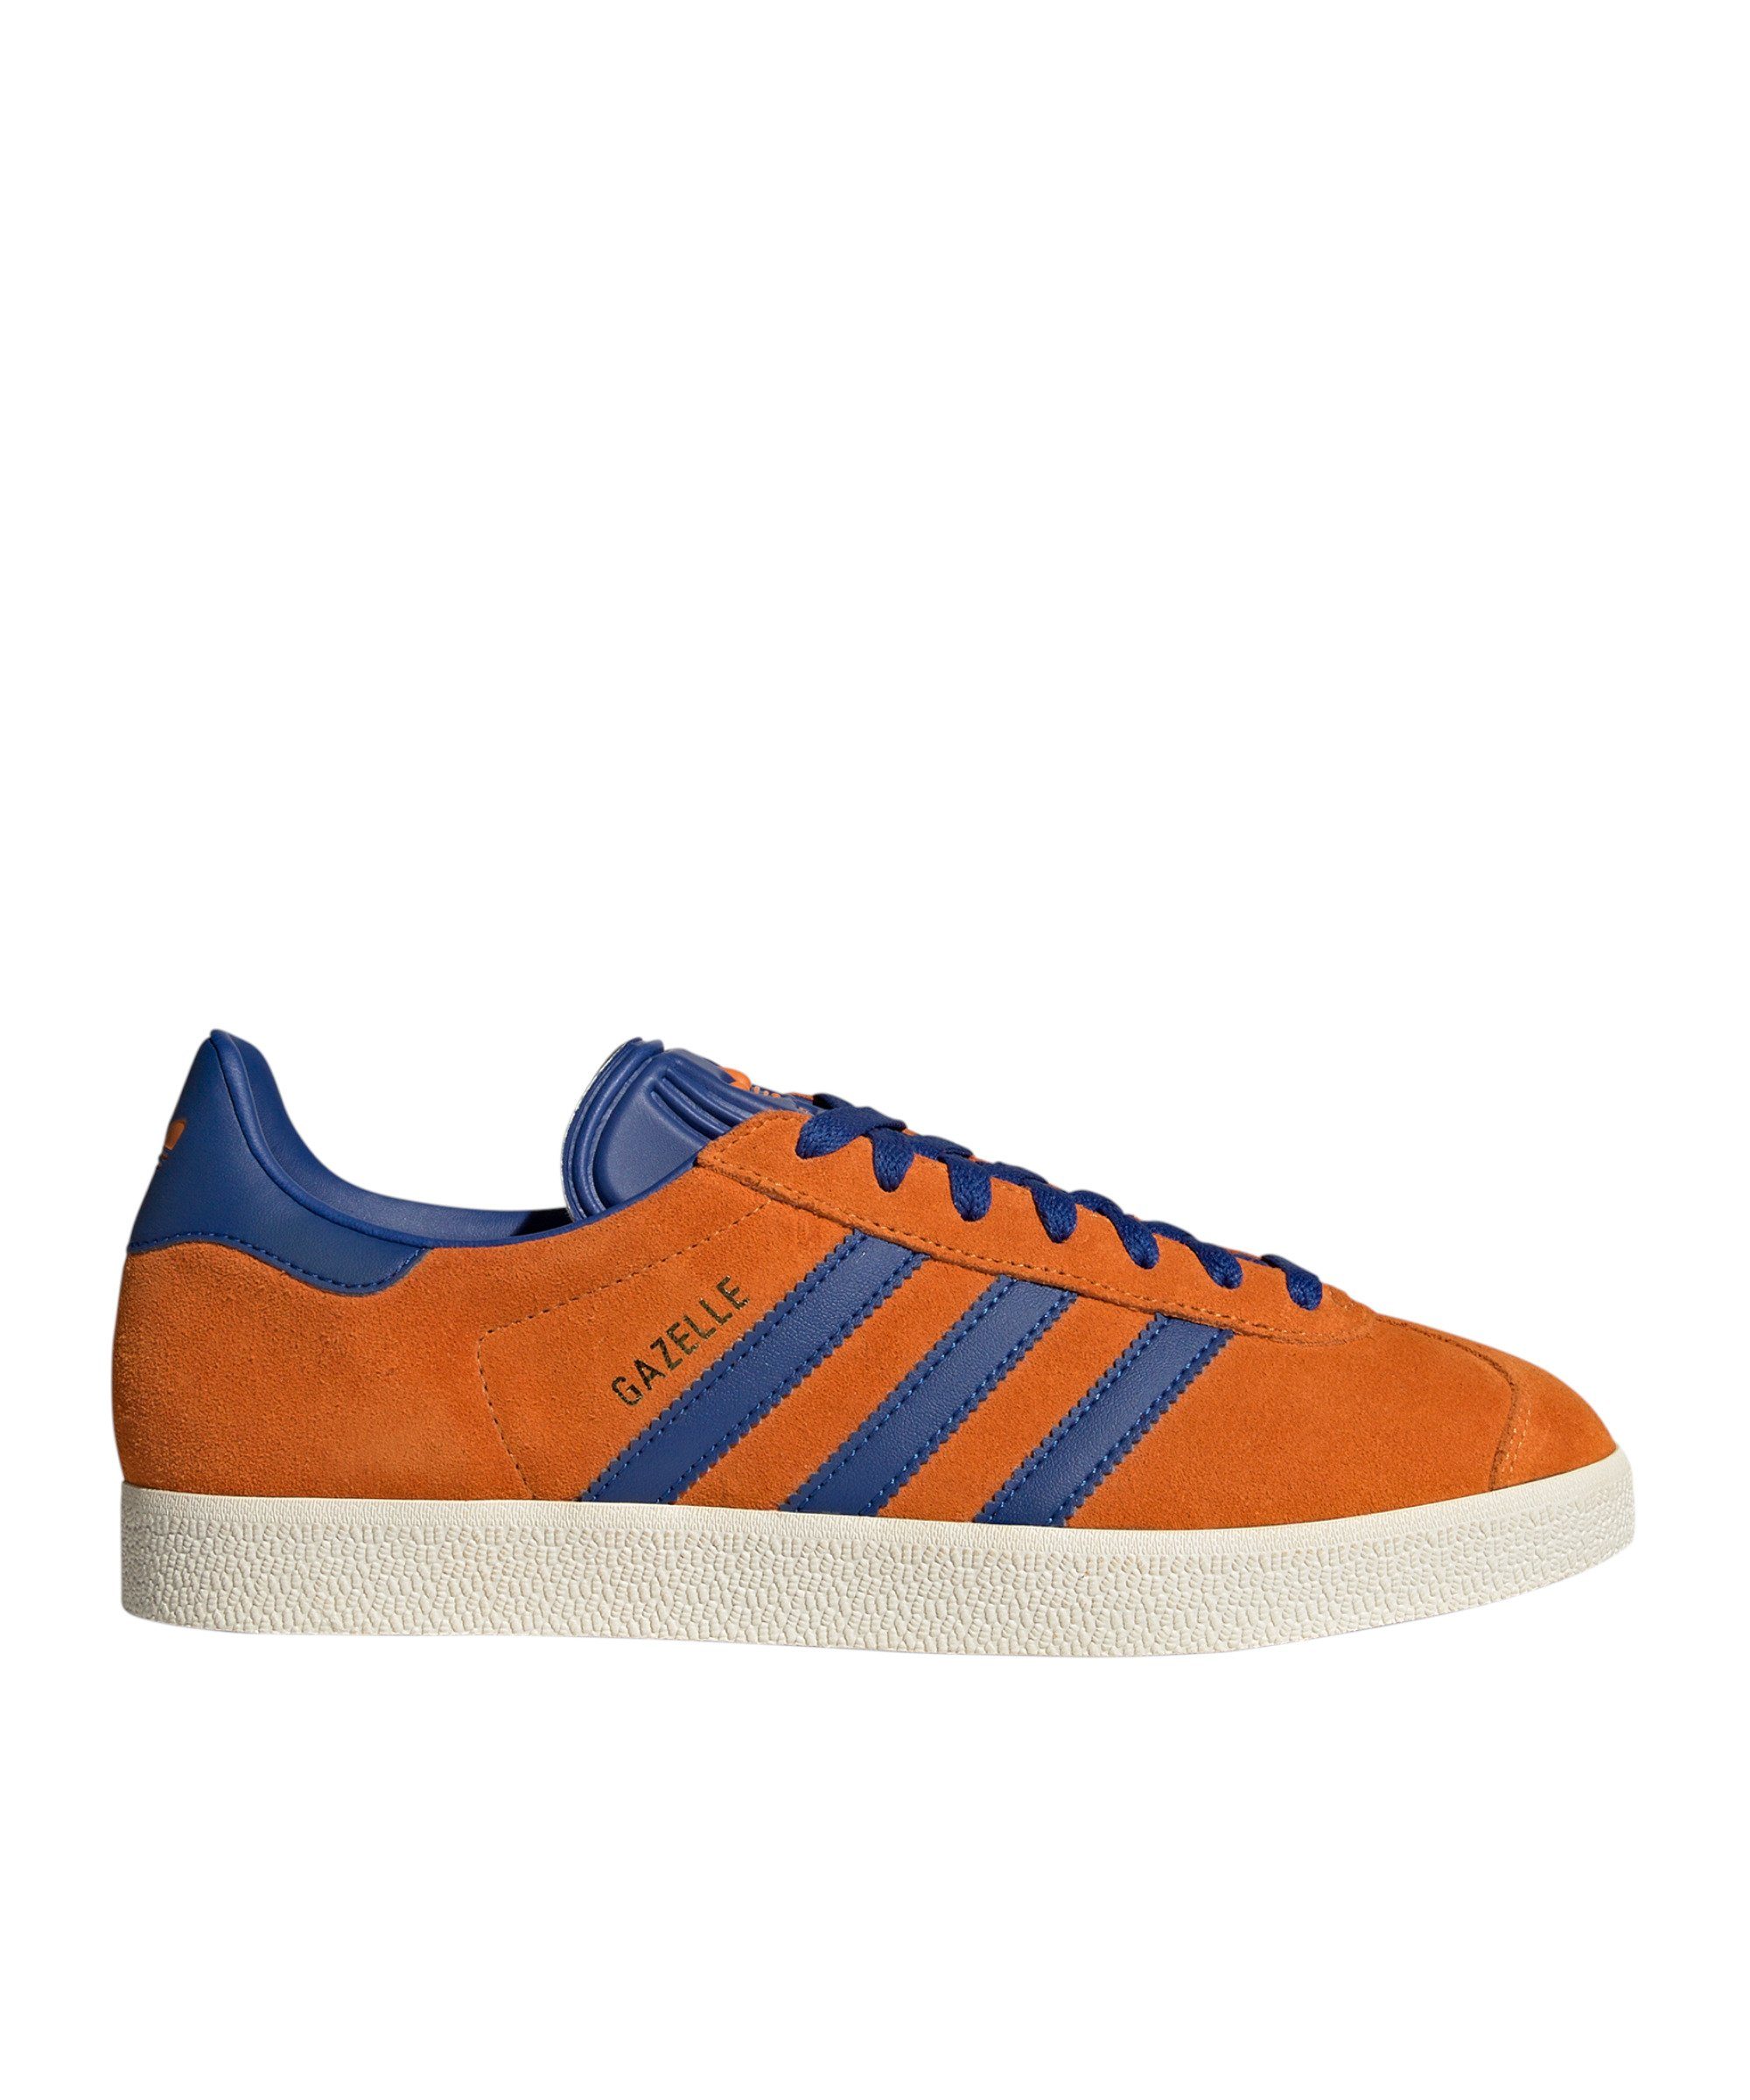 Regulärer Online-Verkauf adidas Originals Gazelle orangeblauweiss Sneaker